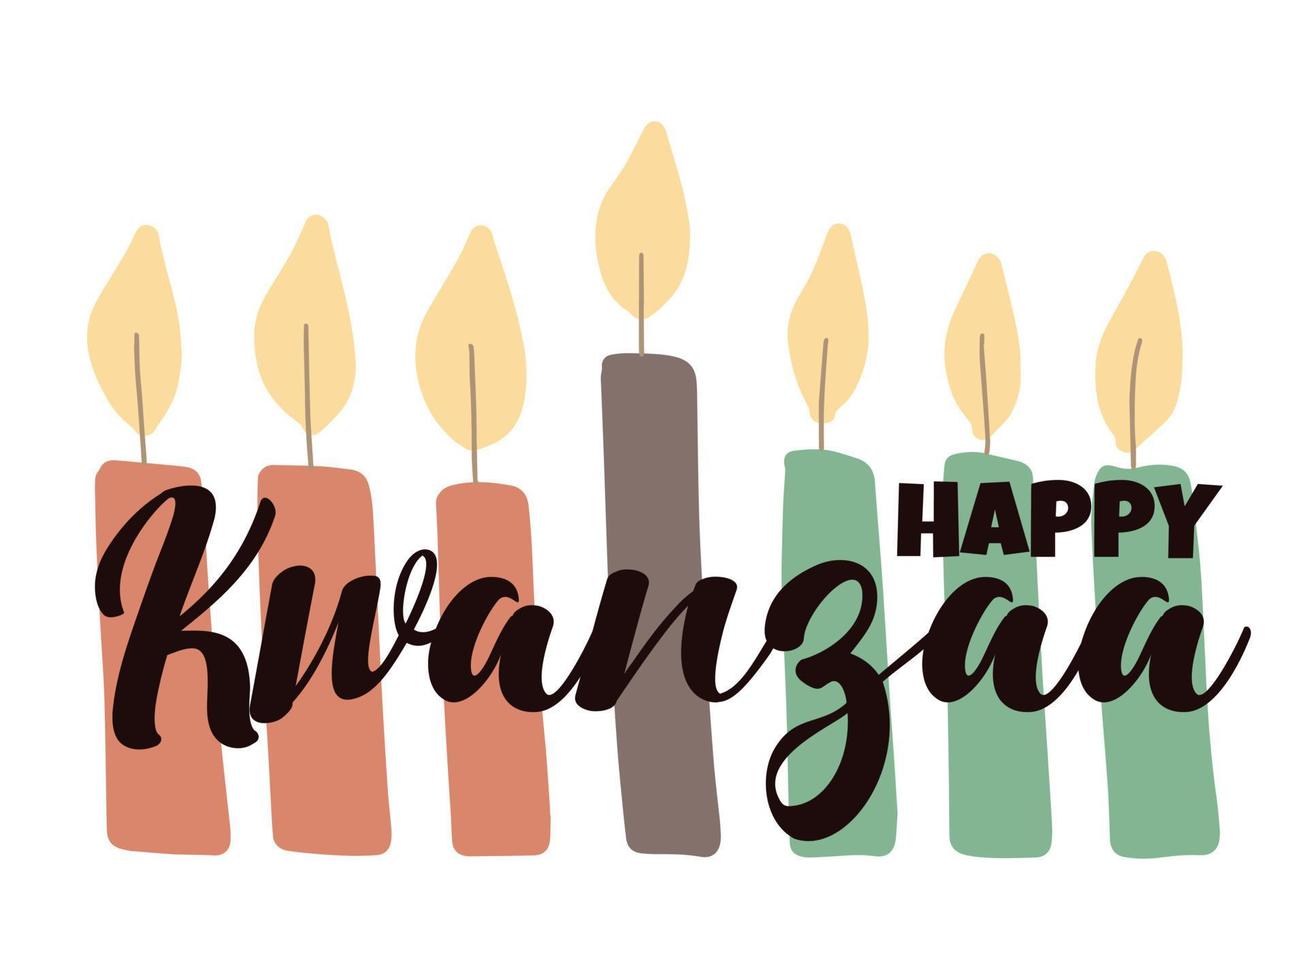 happy kwanzaa - tarjeta de felicitación con letras de guiones y velas kinara simples dibujadas a mano. banner del festival de celebración de la herencia afroamericana vector